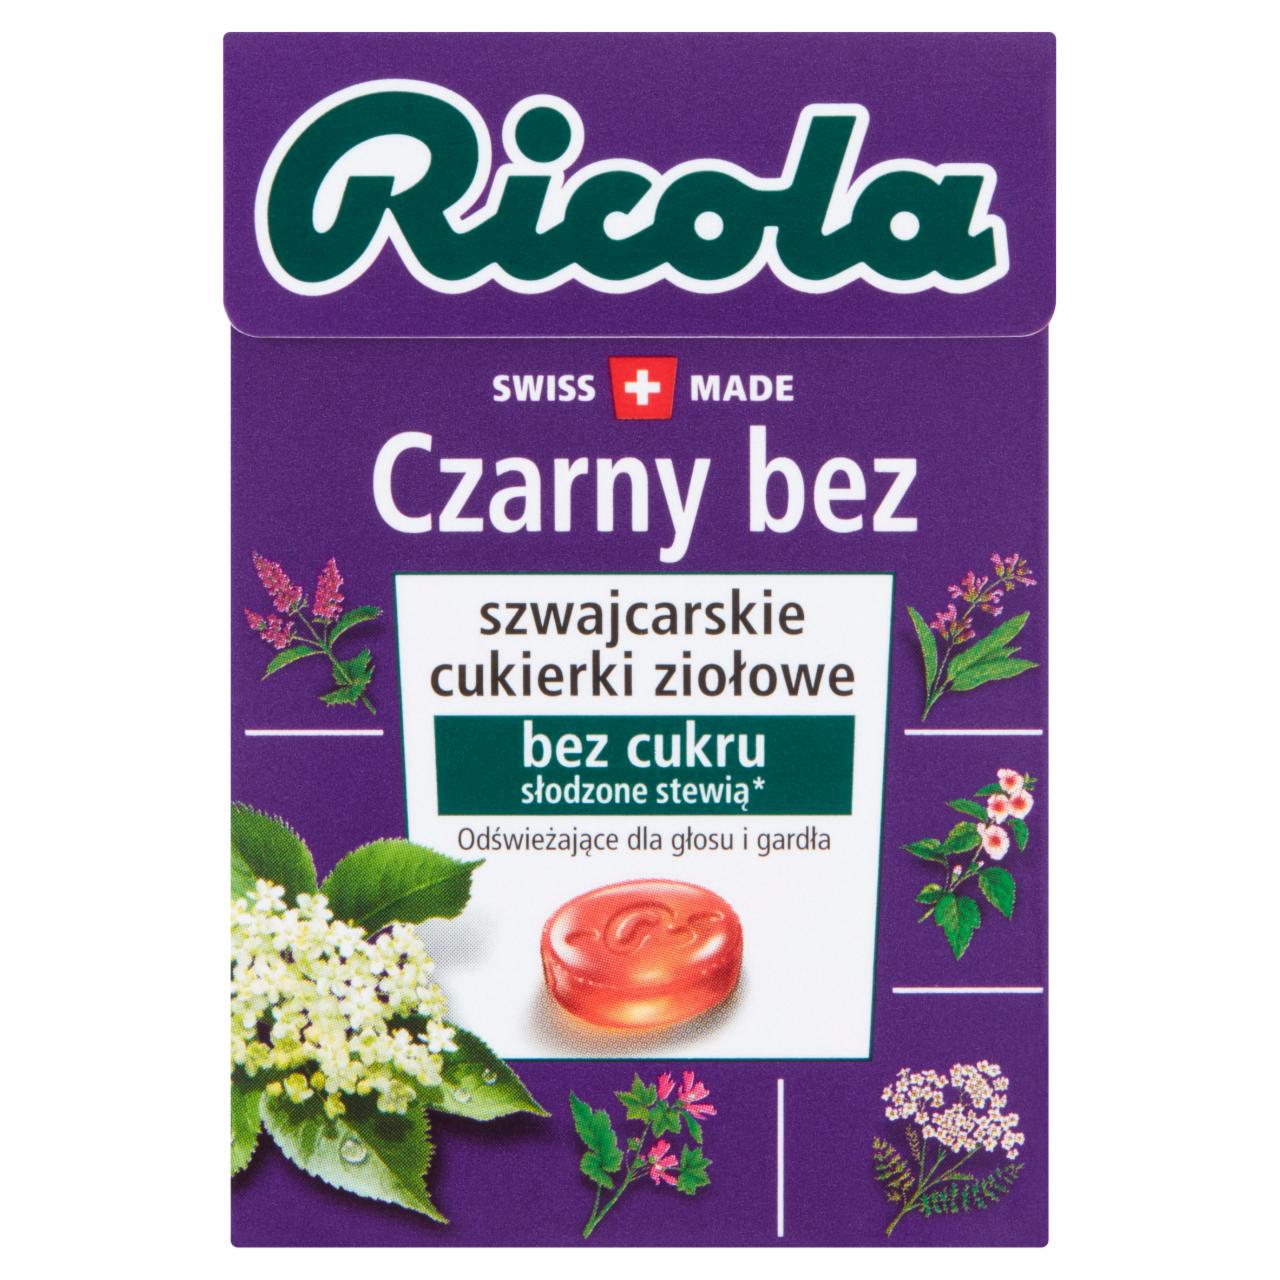 Zdjęcia - Ricola Szwajcarskie cukierki ziołowe czarny bez 27,5 g